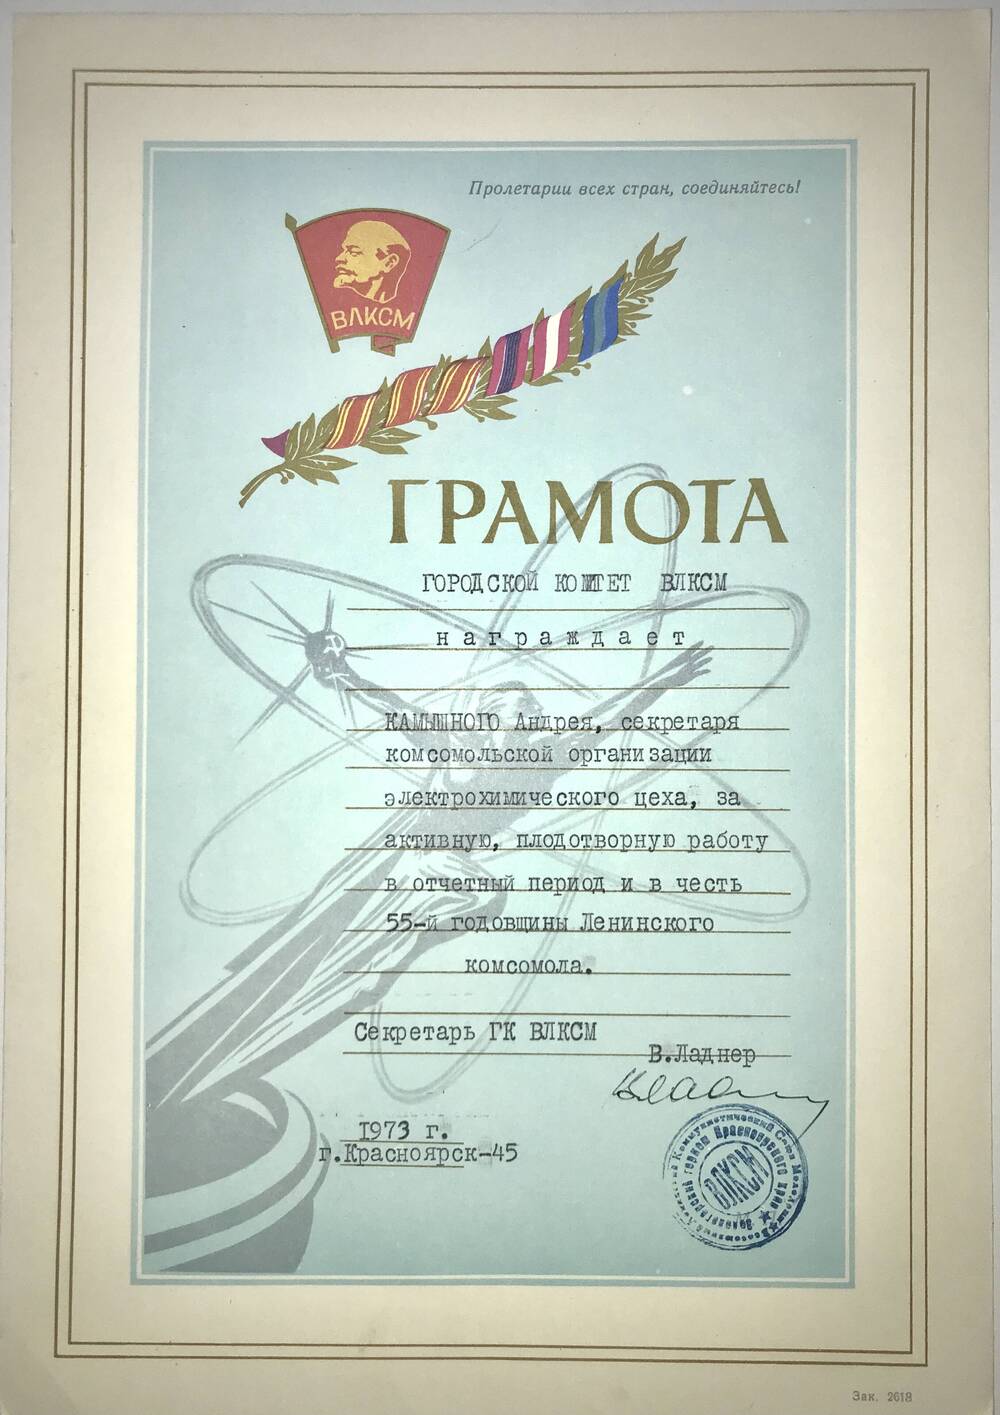 Грамота почетная ГК ВЛКСМ Камышному Андрею за активную работу и в честь 55-й годовщины комсомола. 1973 г